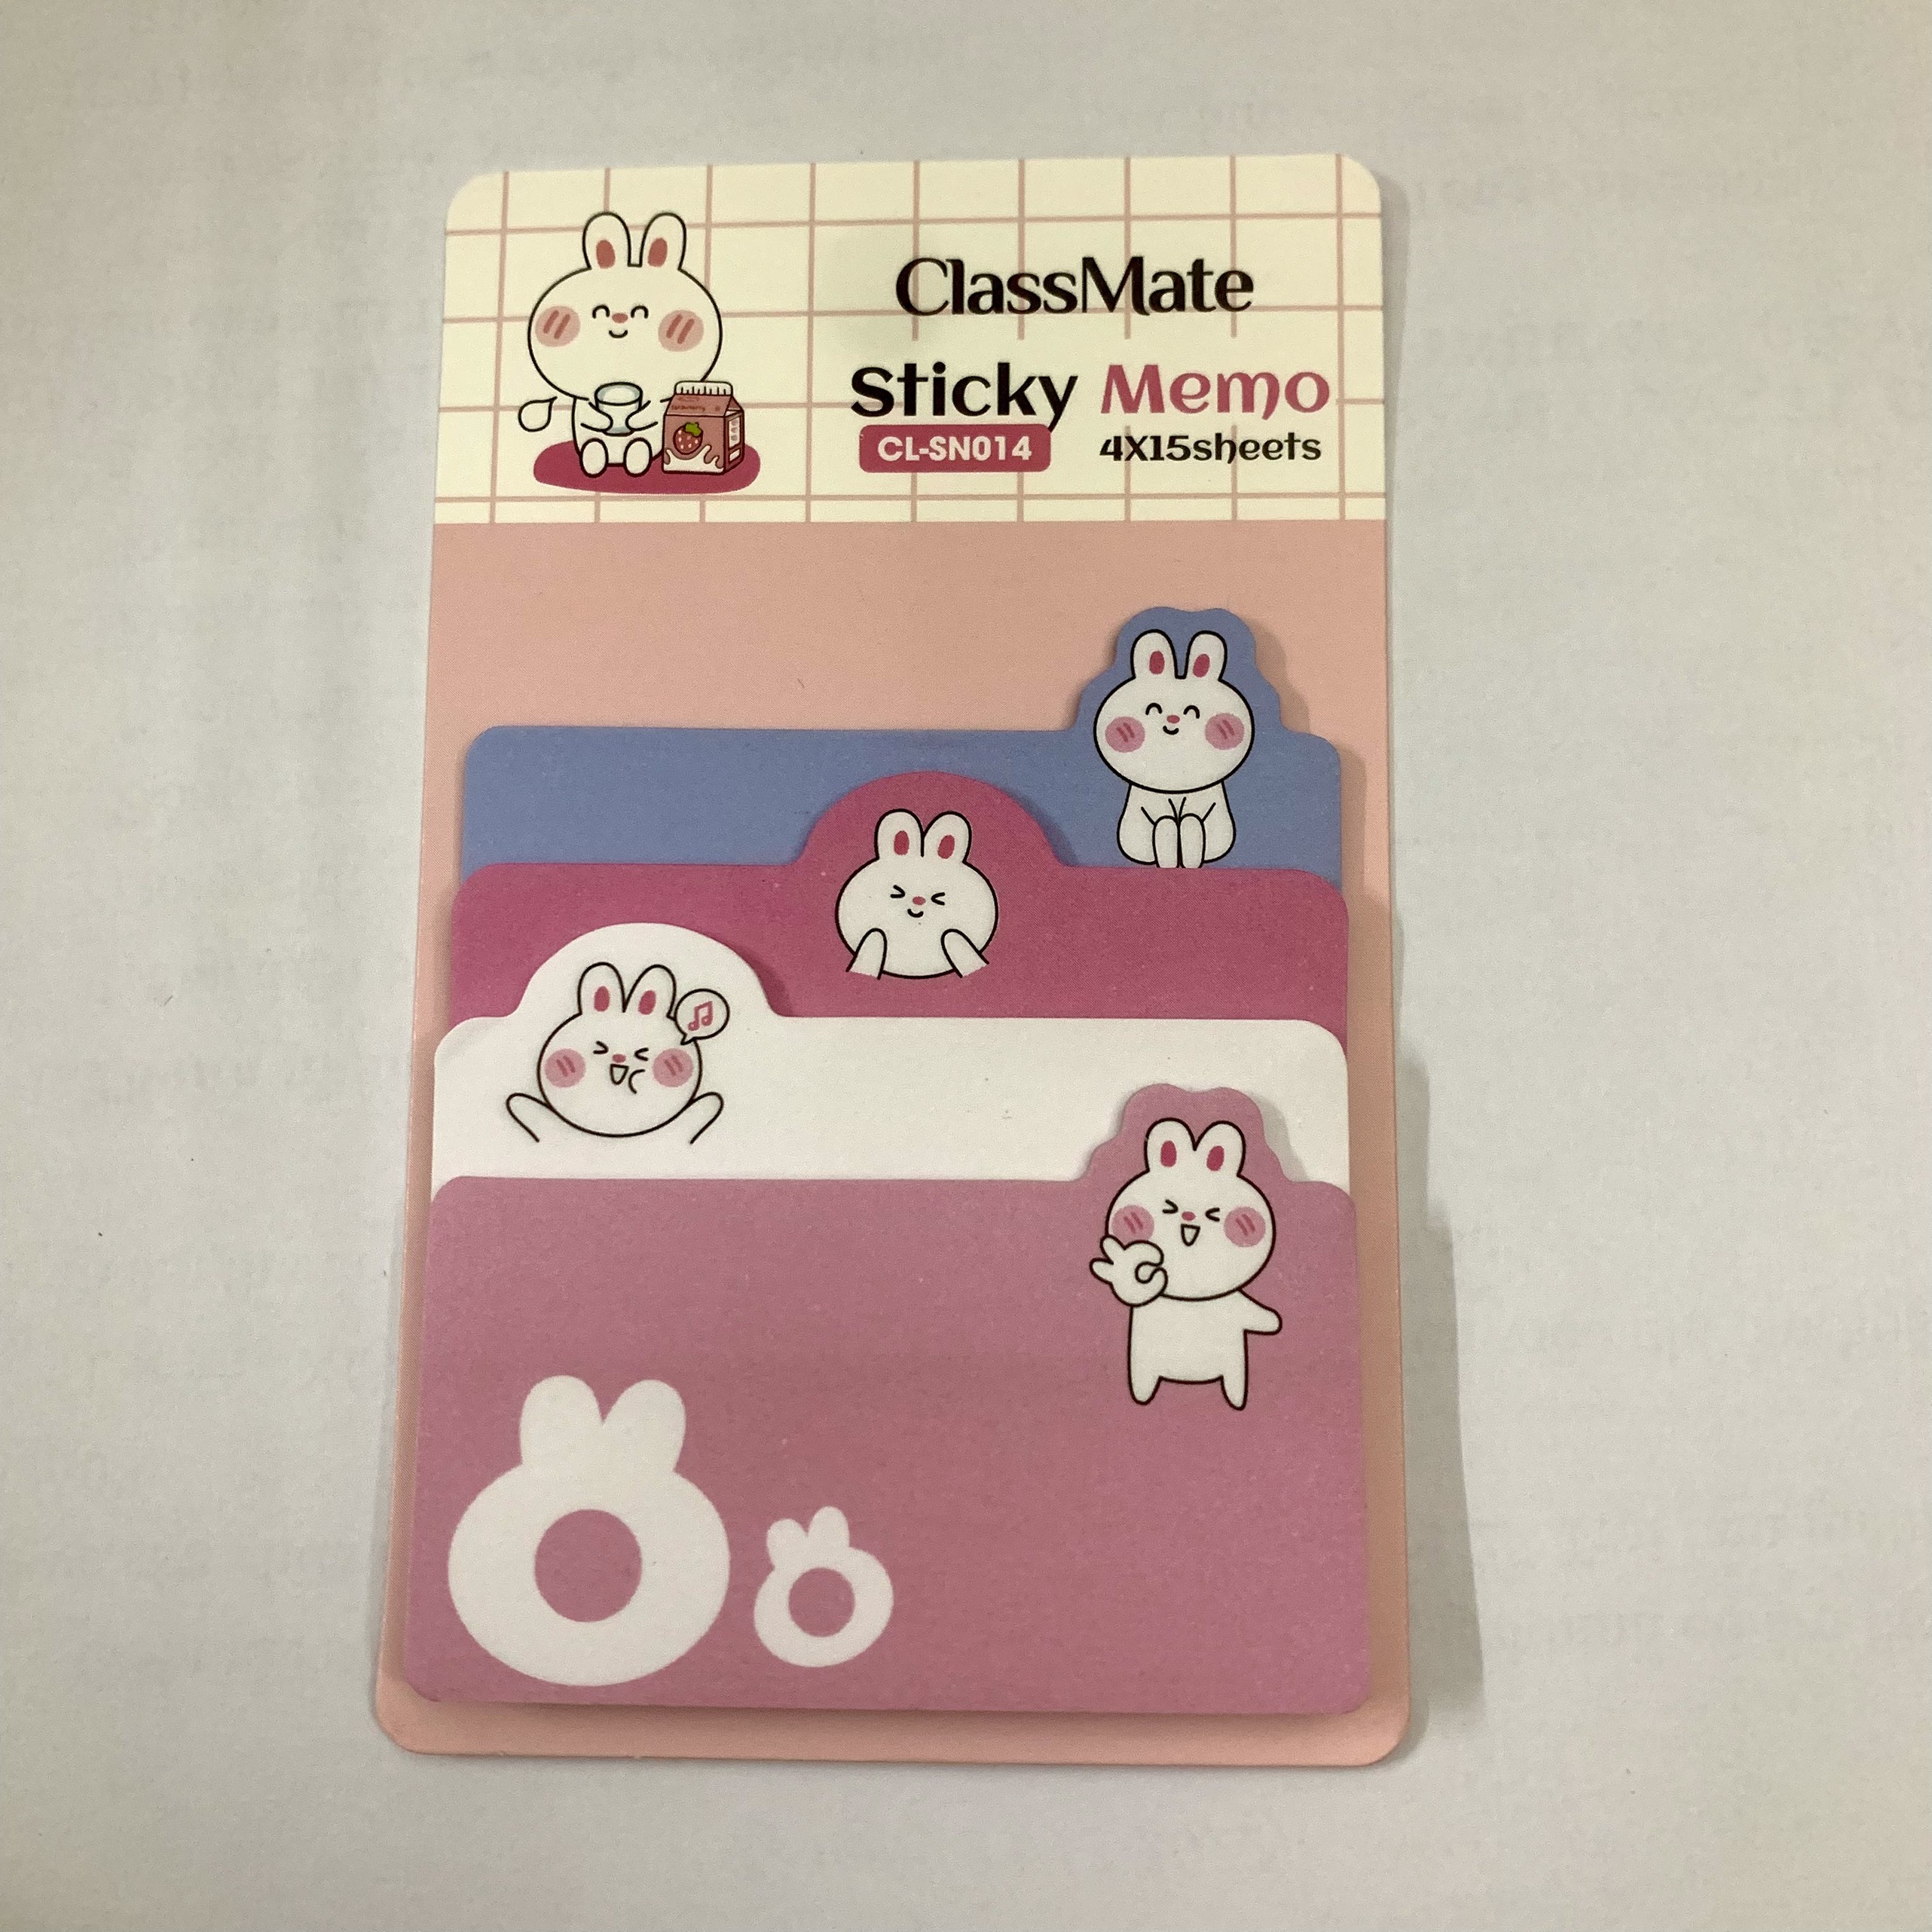 Giấy note ghi chú Classmate Sticky Memo CL-SN014 - hình thỏ dễ thương, chia 4 kích thước/tập